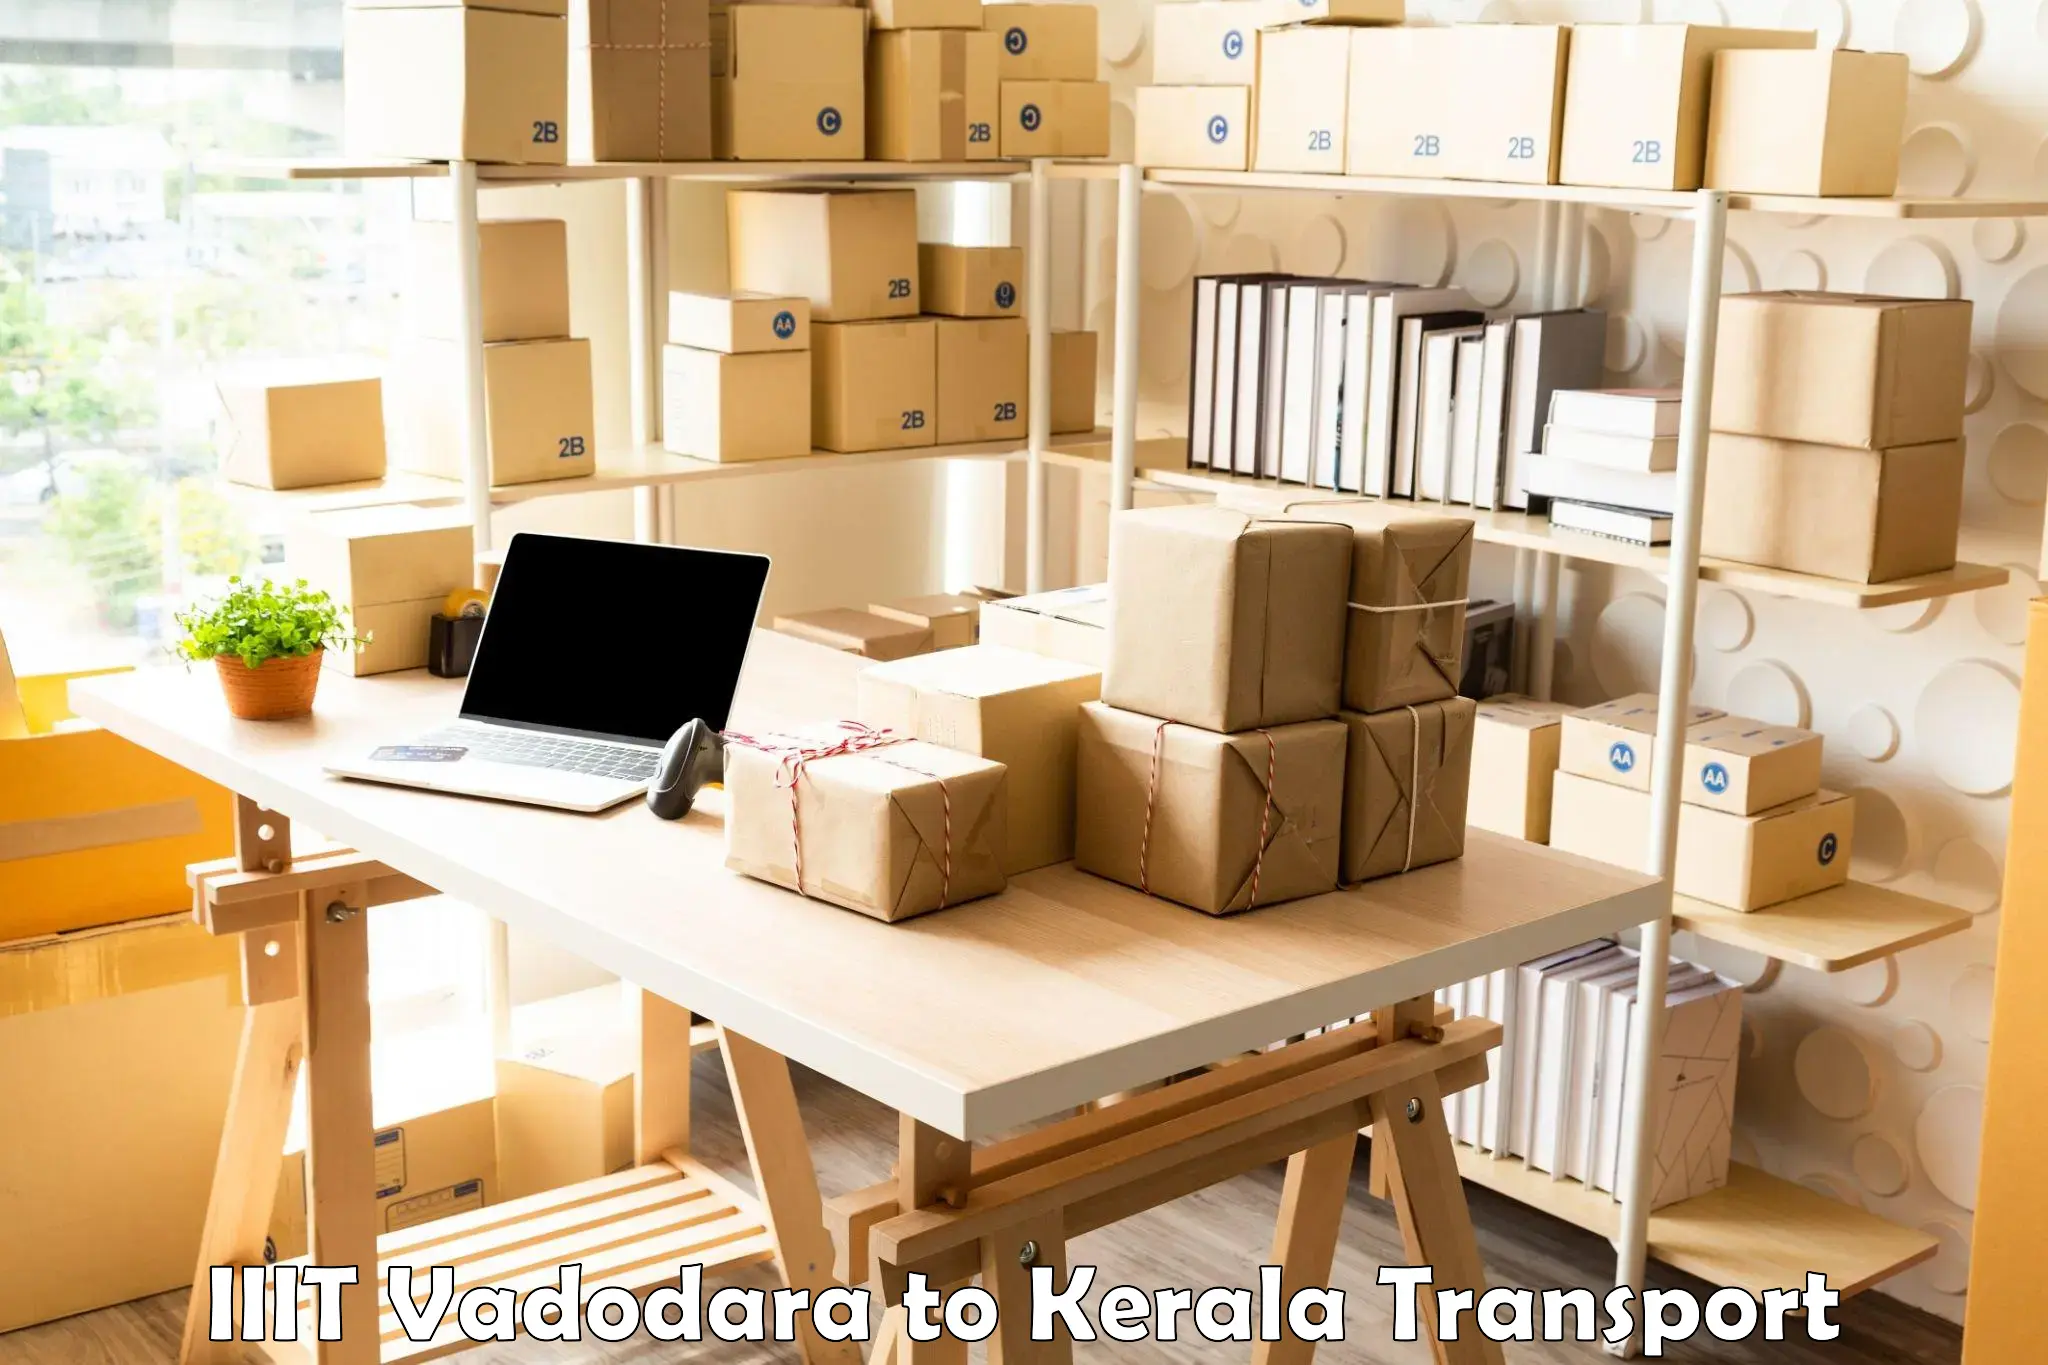 Container transport service IIIT Vadodara to Kottayam